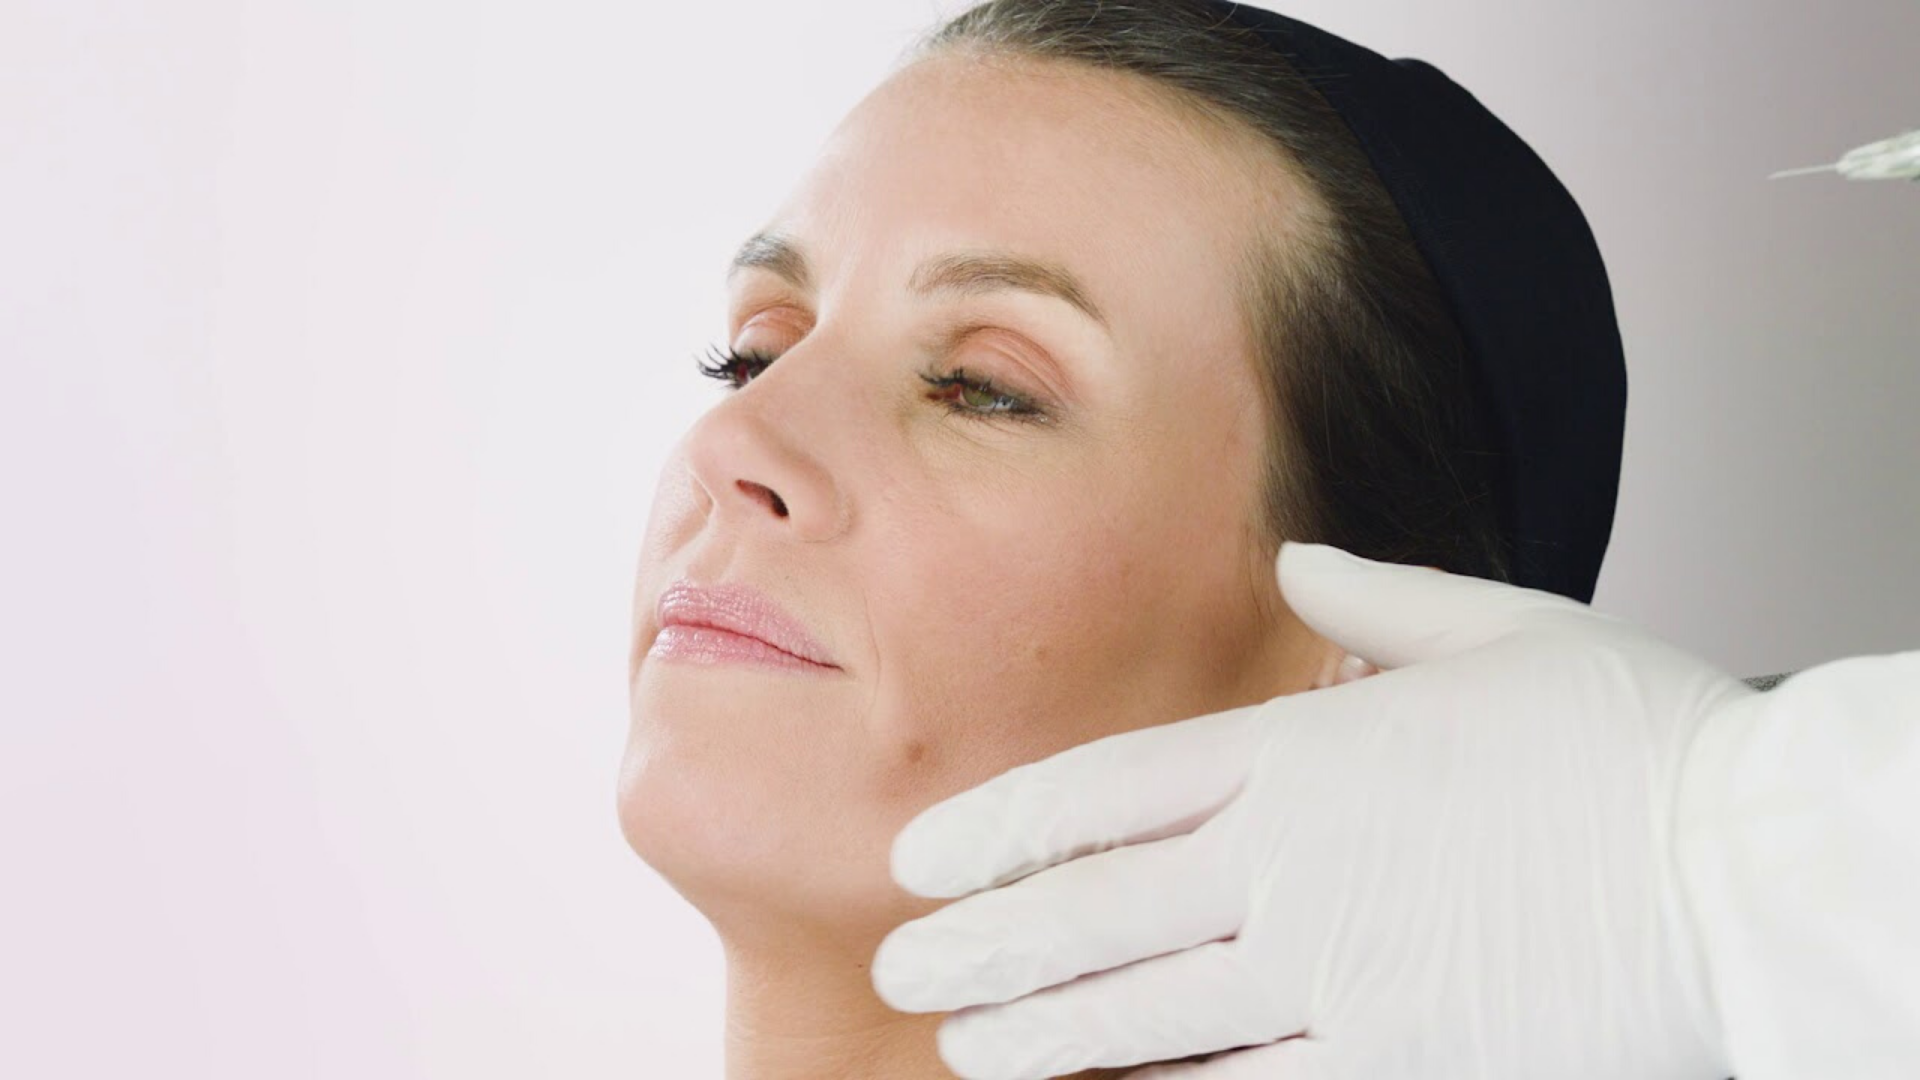 Klicken Sie hier, und erfahren Sie, wie SCHOTT TOPPAC® cosmetic bei kosmetischen und medizinischen Anwendungen eine Reihe von Vorteilen bietet